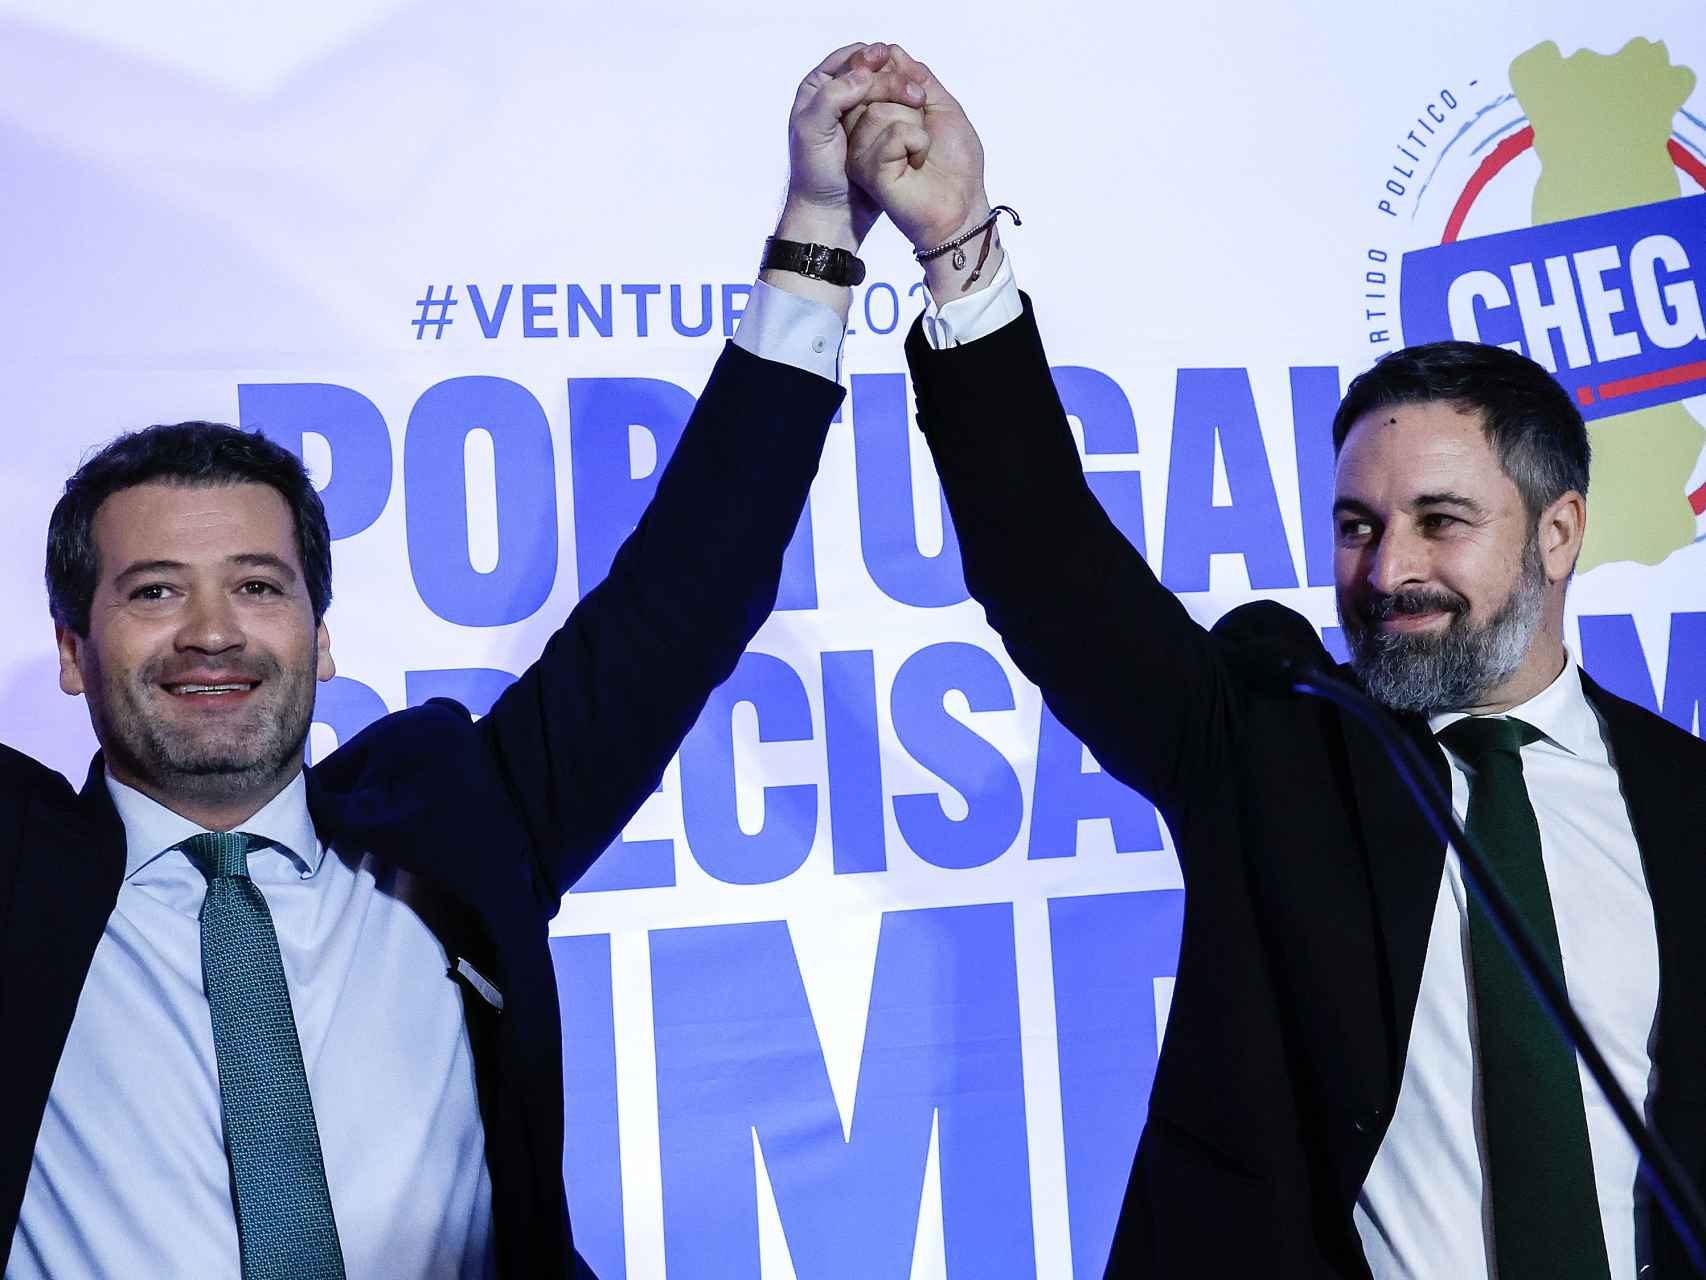 André Ventura, presidente del partido de extrema derecha Chega, recibe la visita de Santiago Abascal en un acto de la campaña de las últimas elecciones parlamentarias de Portugal.